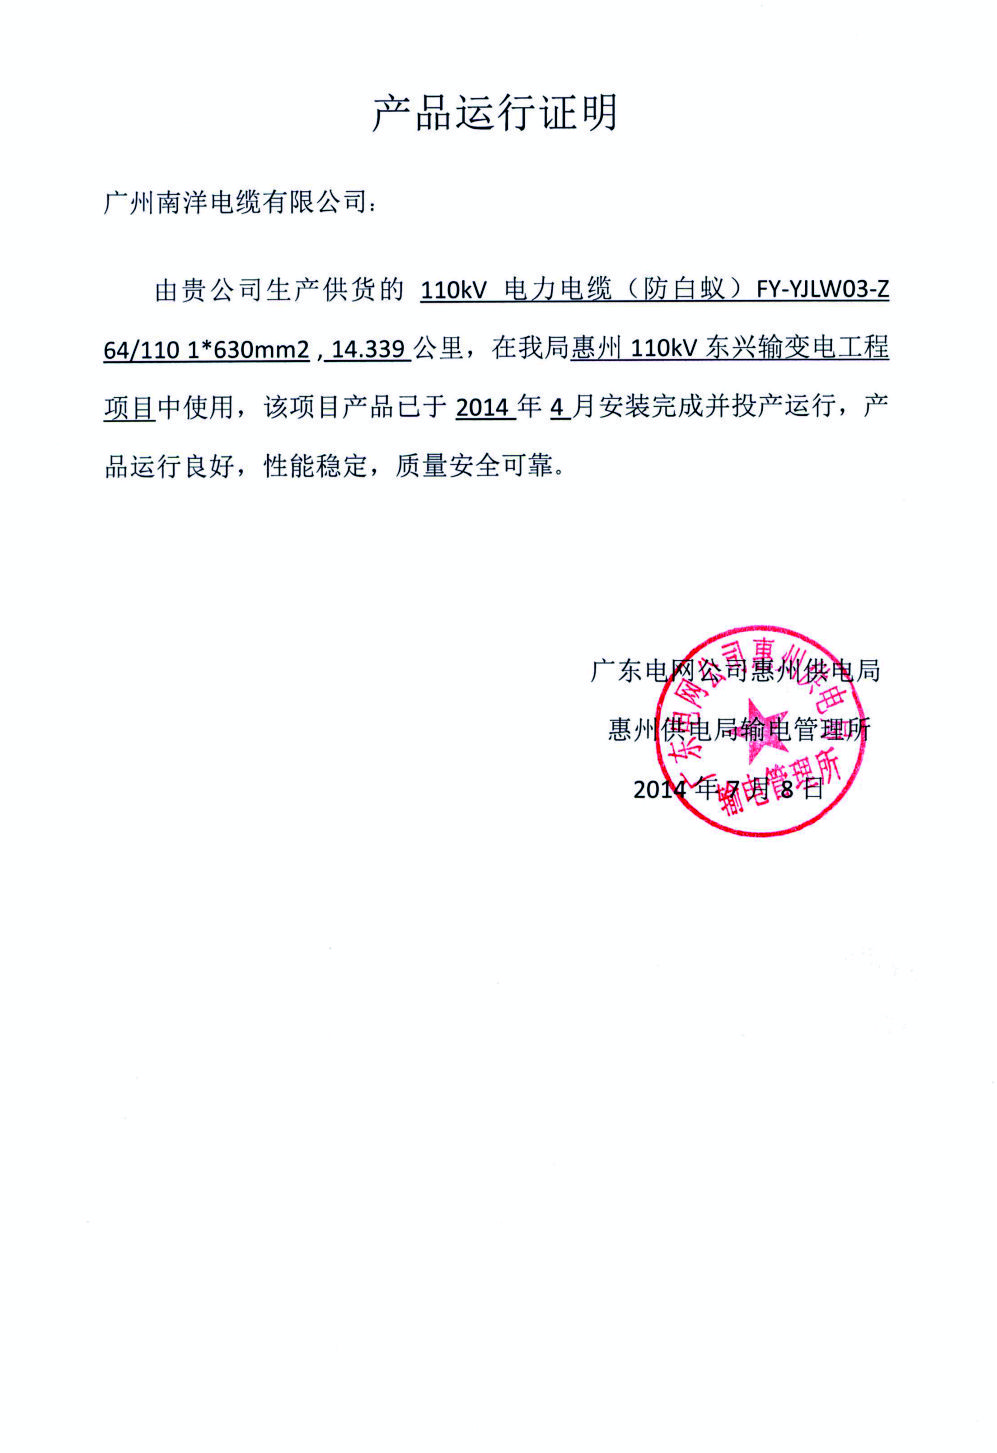 惠州110kv东兴输变电工程项目产品运行证明